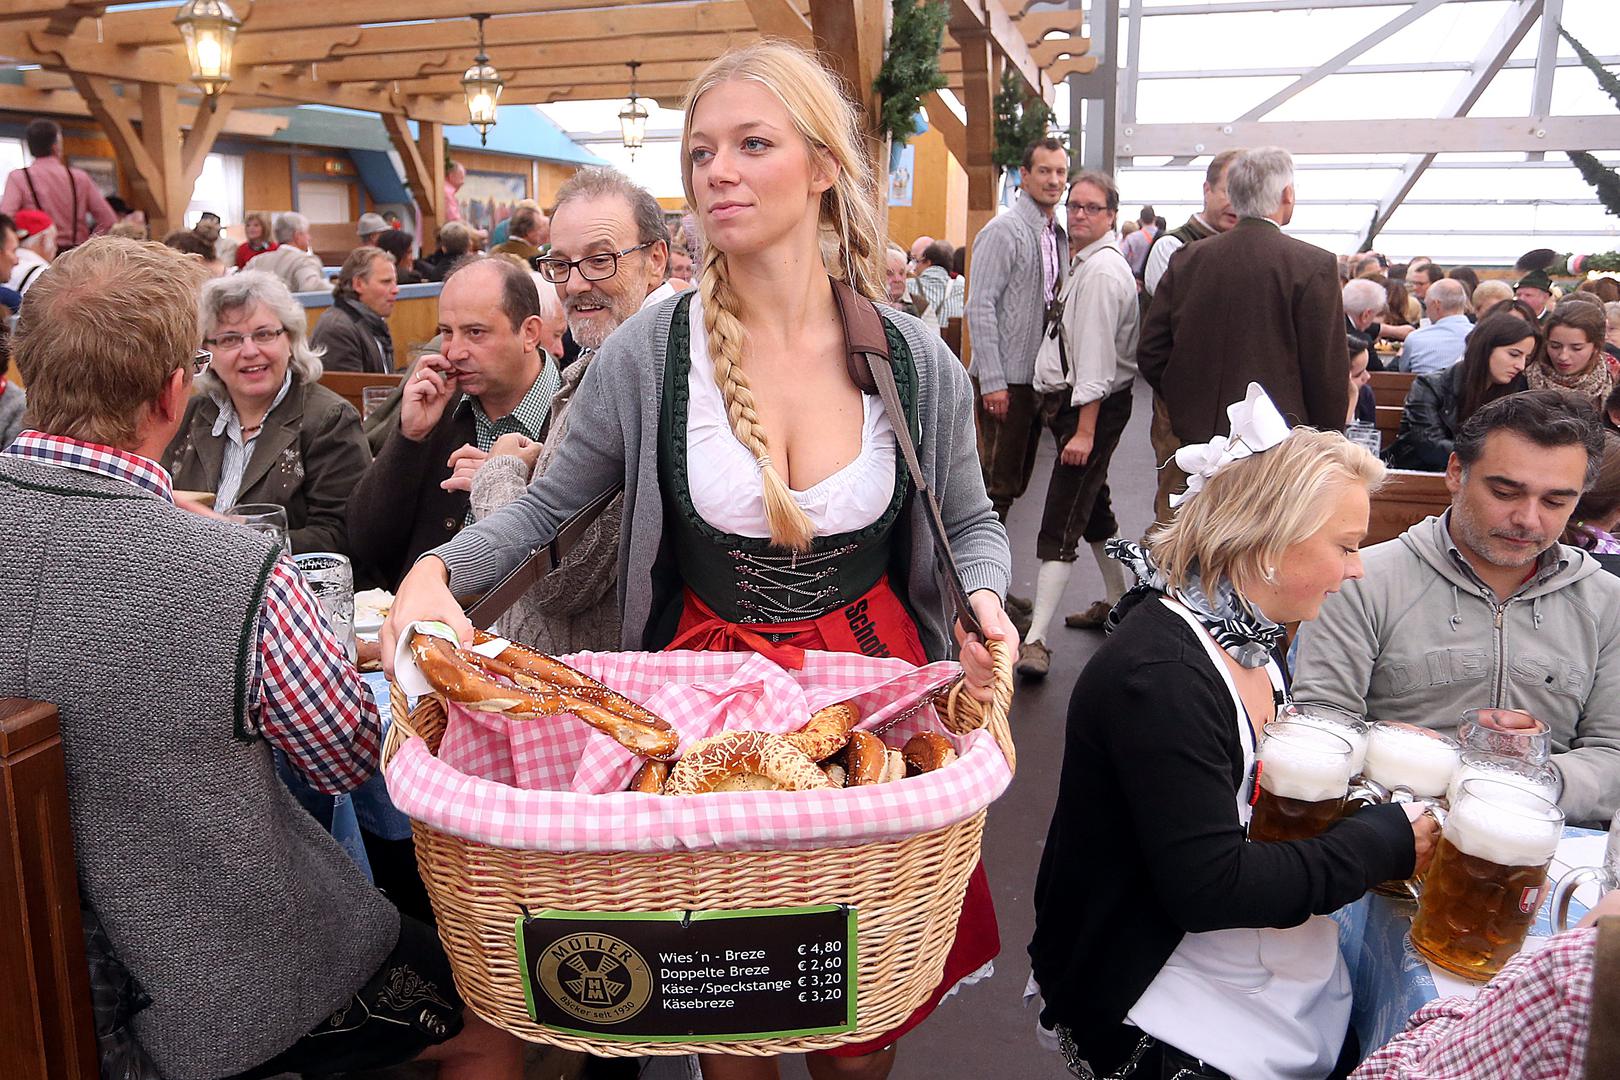 VEĆINA PUTUJE TURISTIČKI Najtraženiji su München i Berlin te tura dvorcima Bavarske,
a brojne posjete tradicionalno generira i münchenski festival piva Oktoberfest